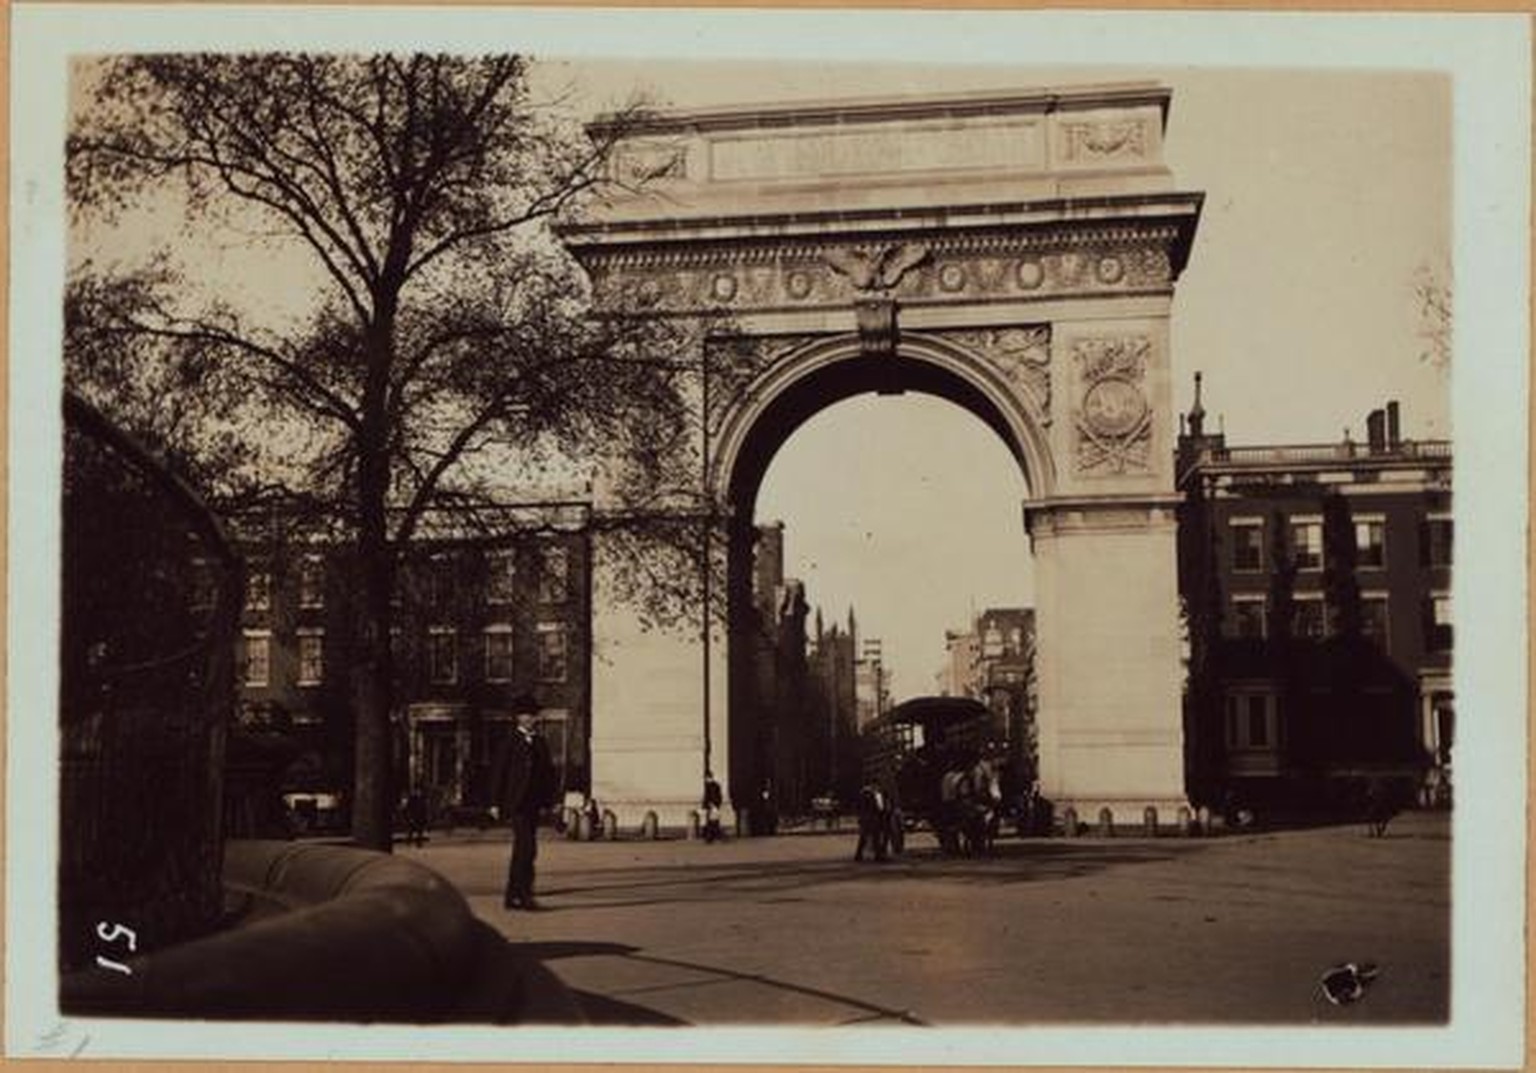 Washington Square Arch around 1900.